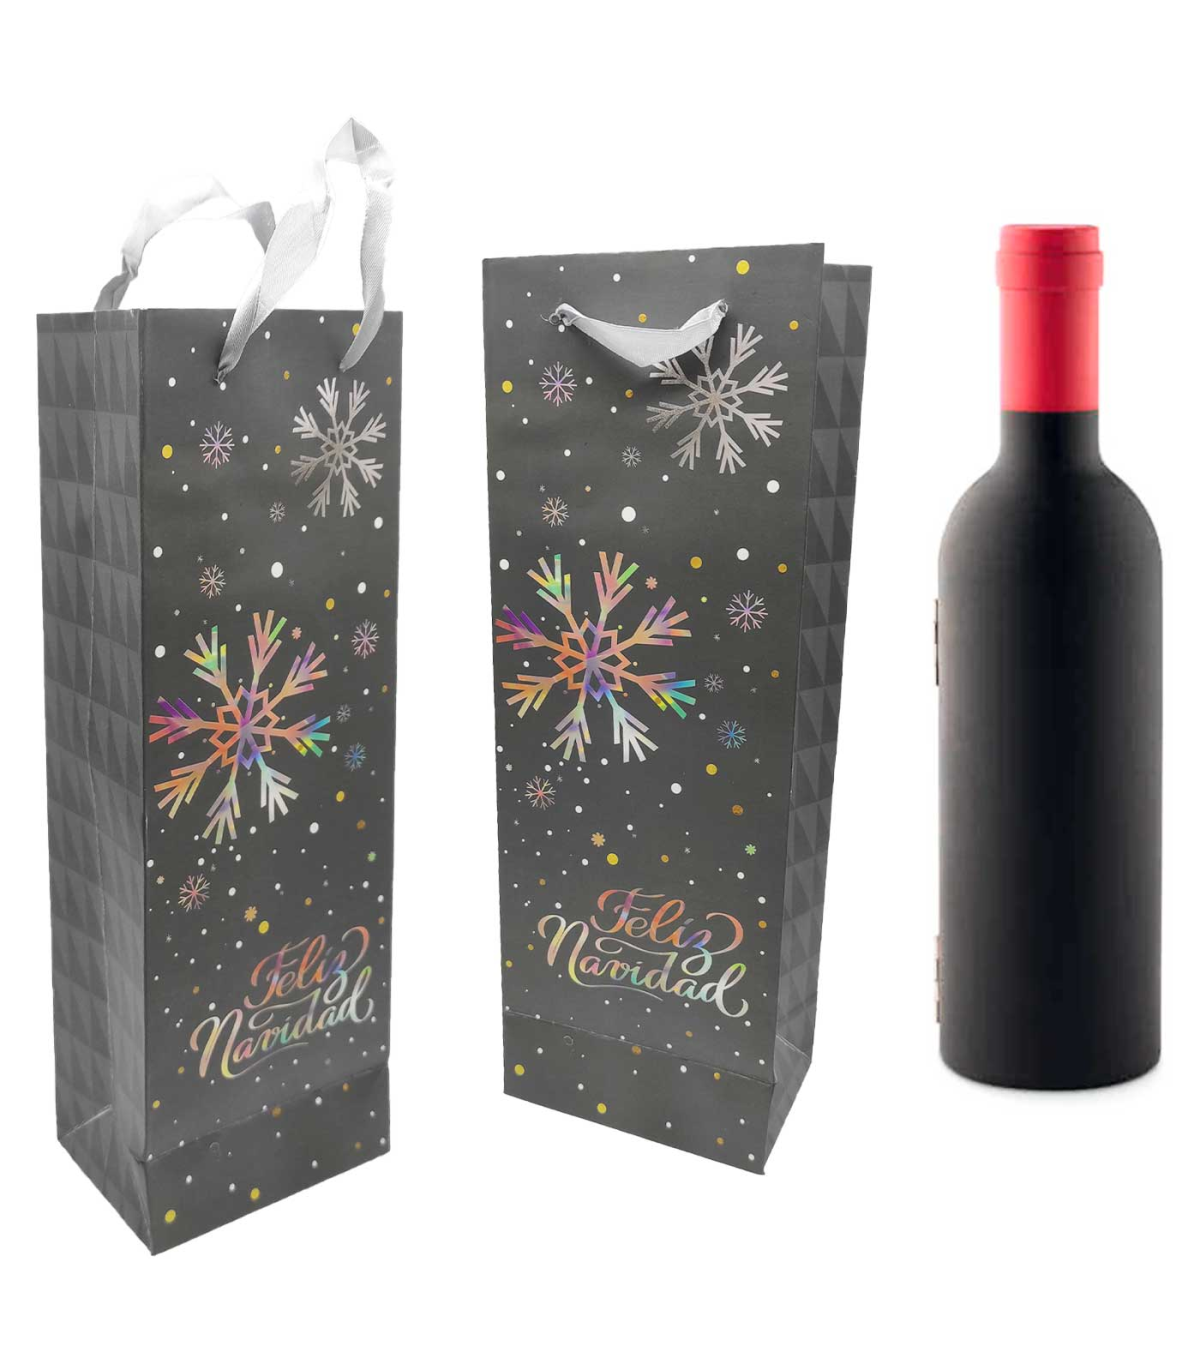 Bolsas para botellas de vino: el complemento perfecto